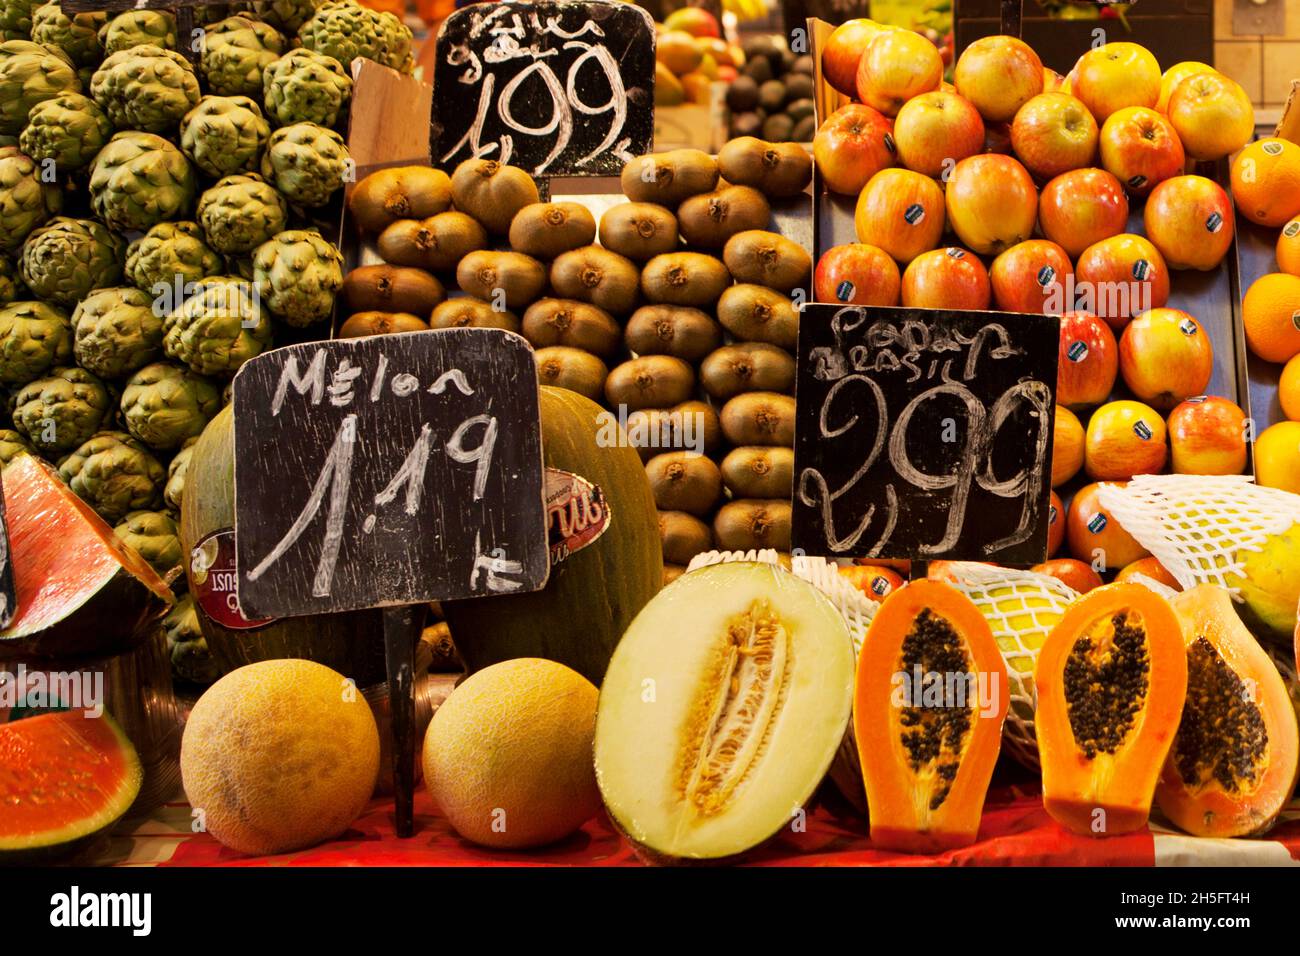 Marktstand mit diversen Früchten und Obst, Barcelona, Spanien. Stock Photo